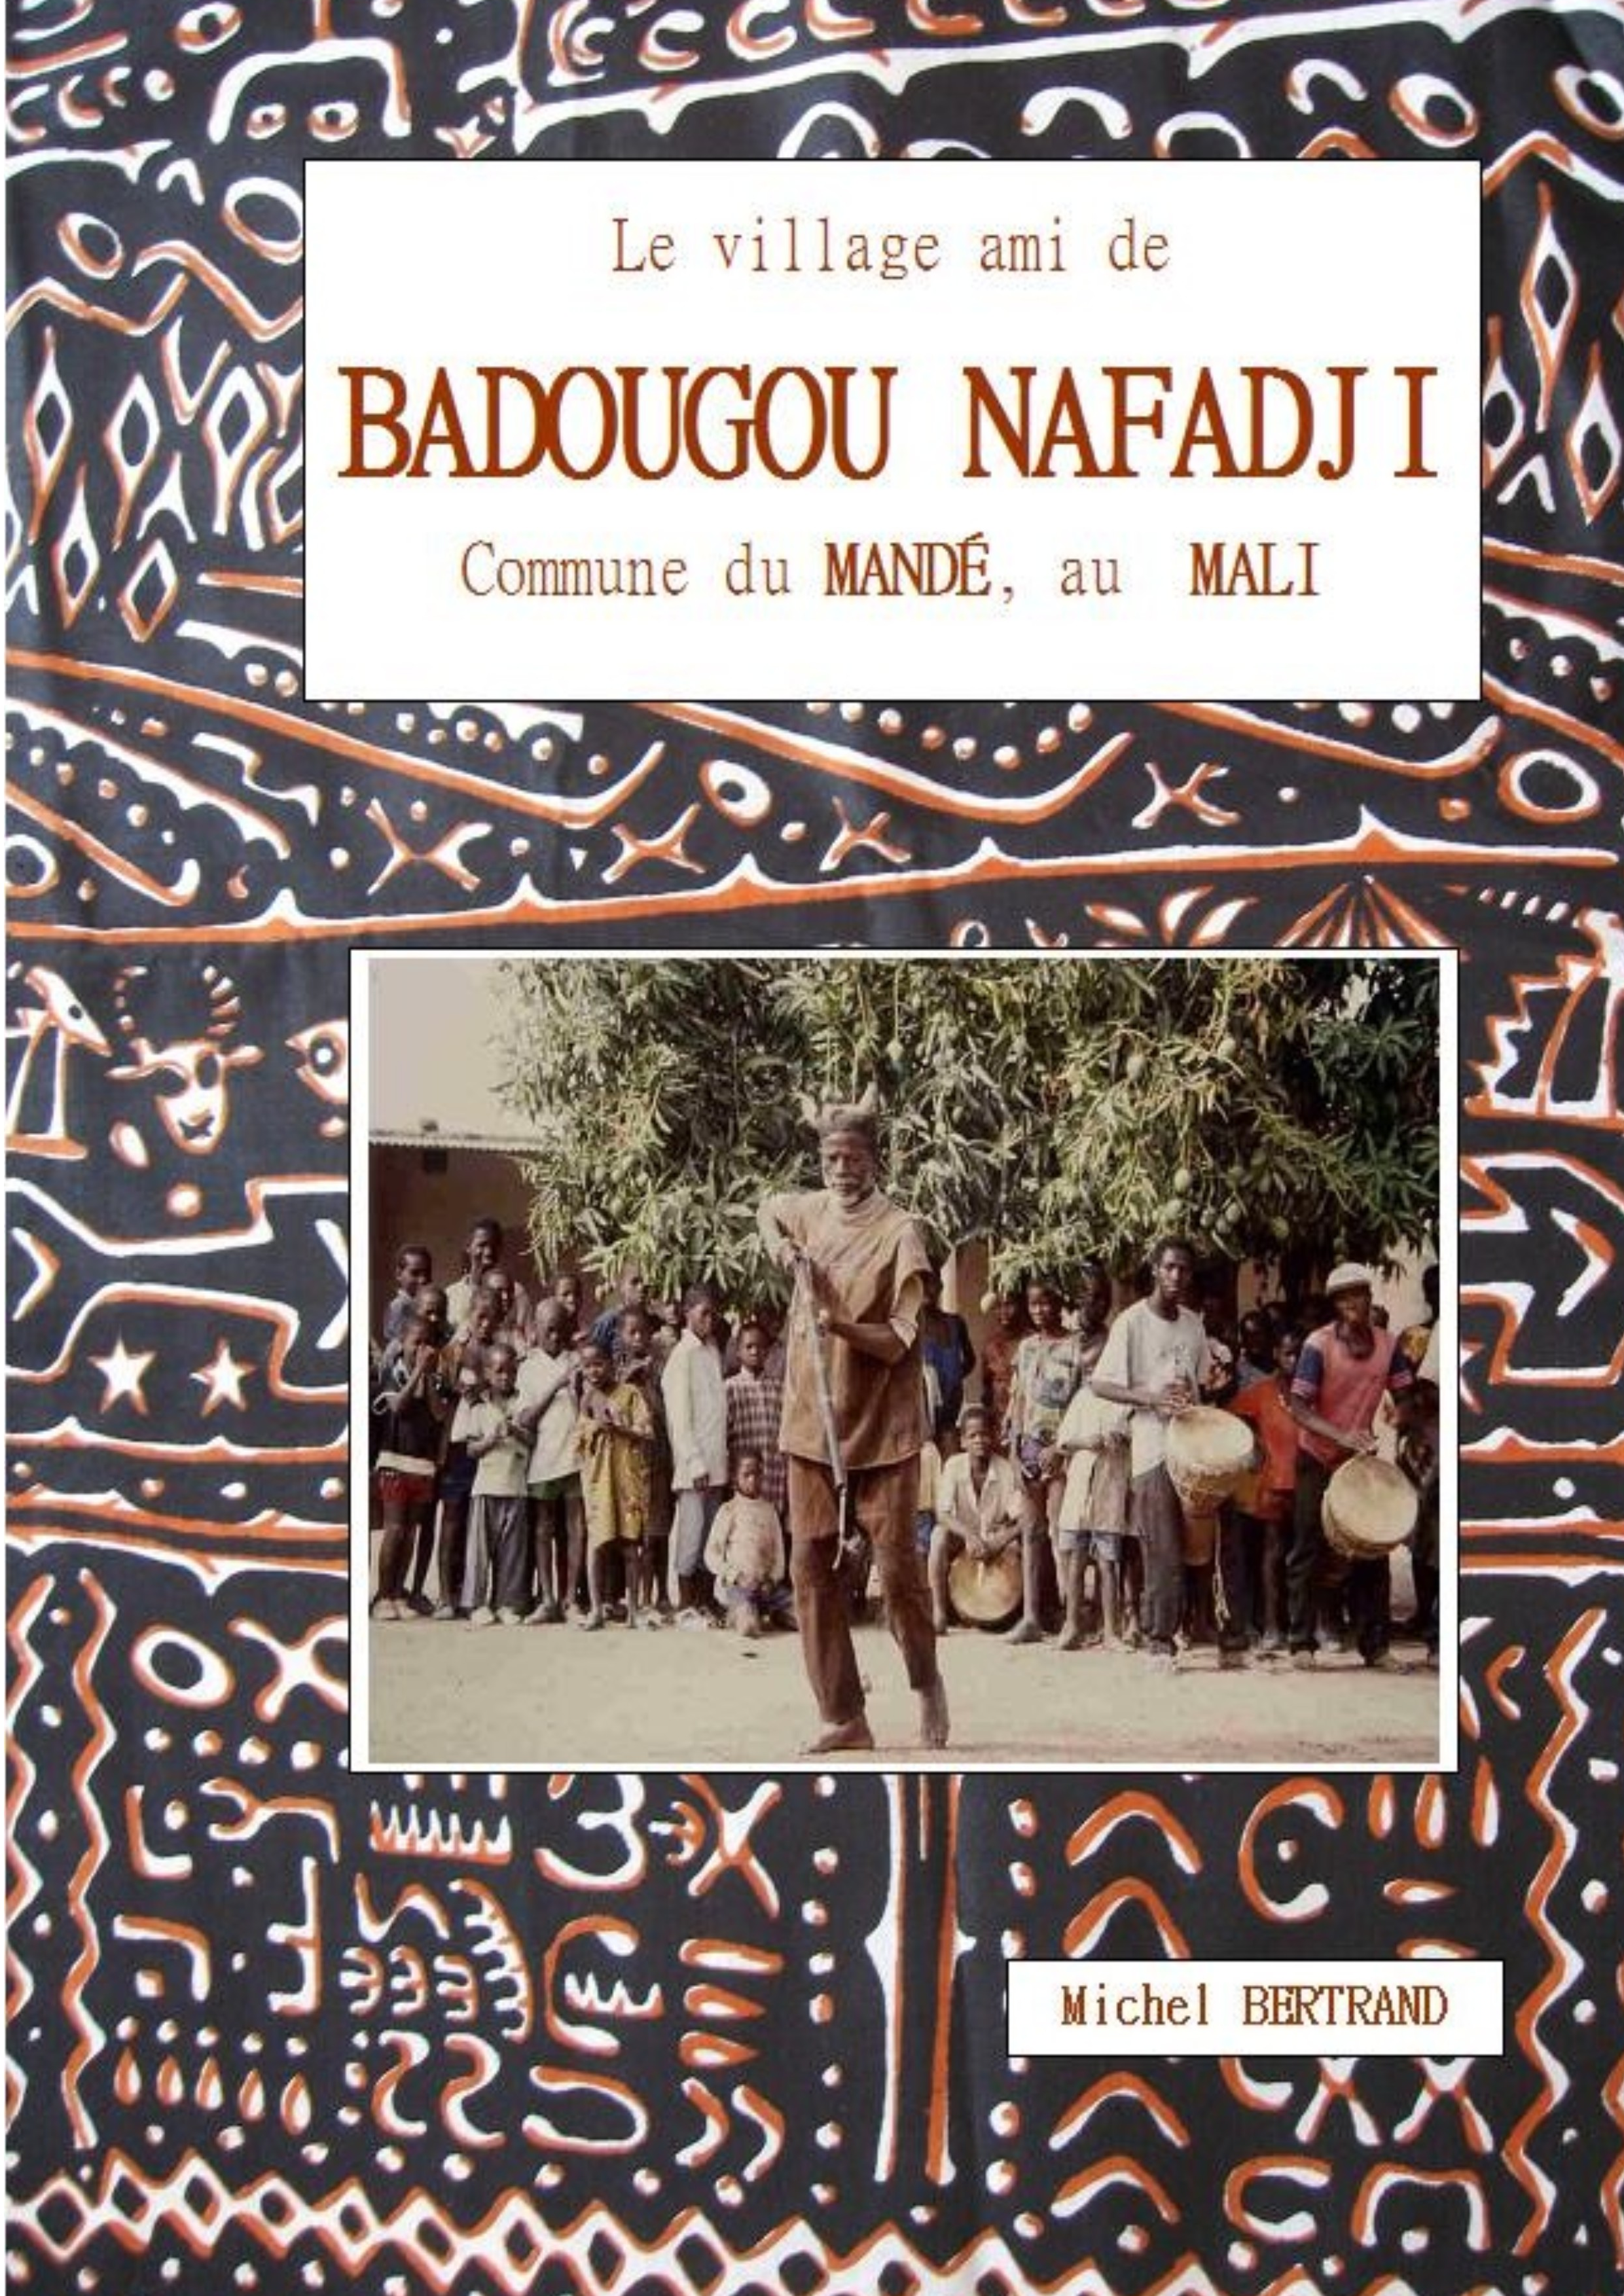 BADOUGOU NAFADJI Village du Mali